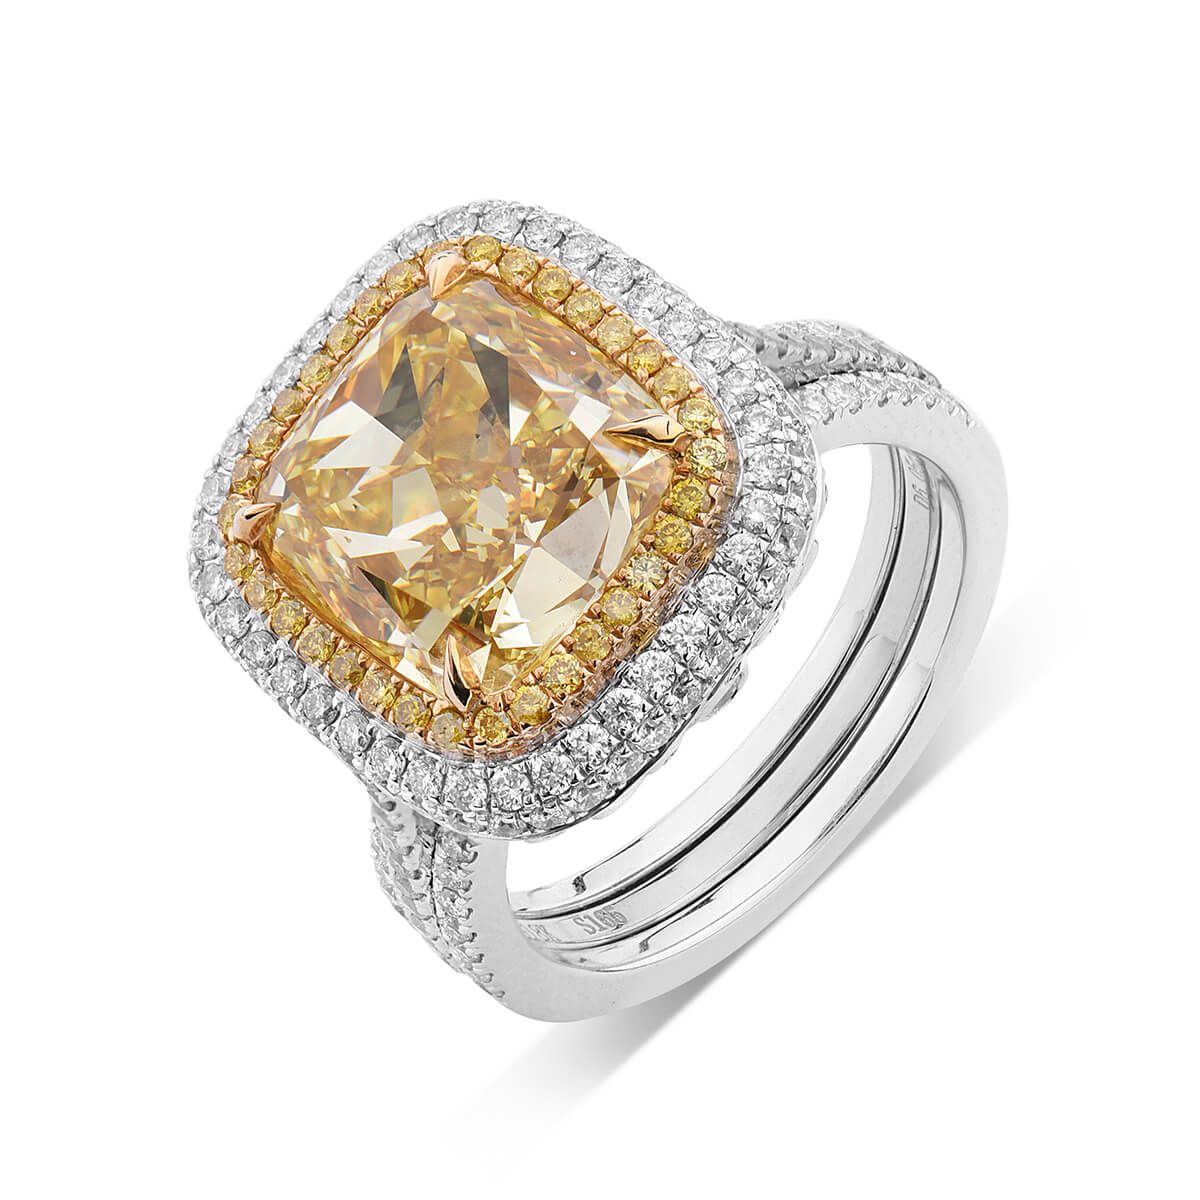 Fancy Intense Yellow Diamond Ring, 7.05 Ct. TW, Cushion shape, GIA Certified, 6177174127